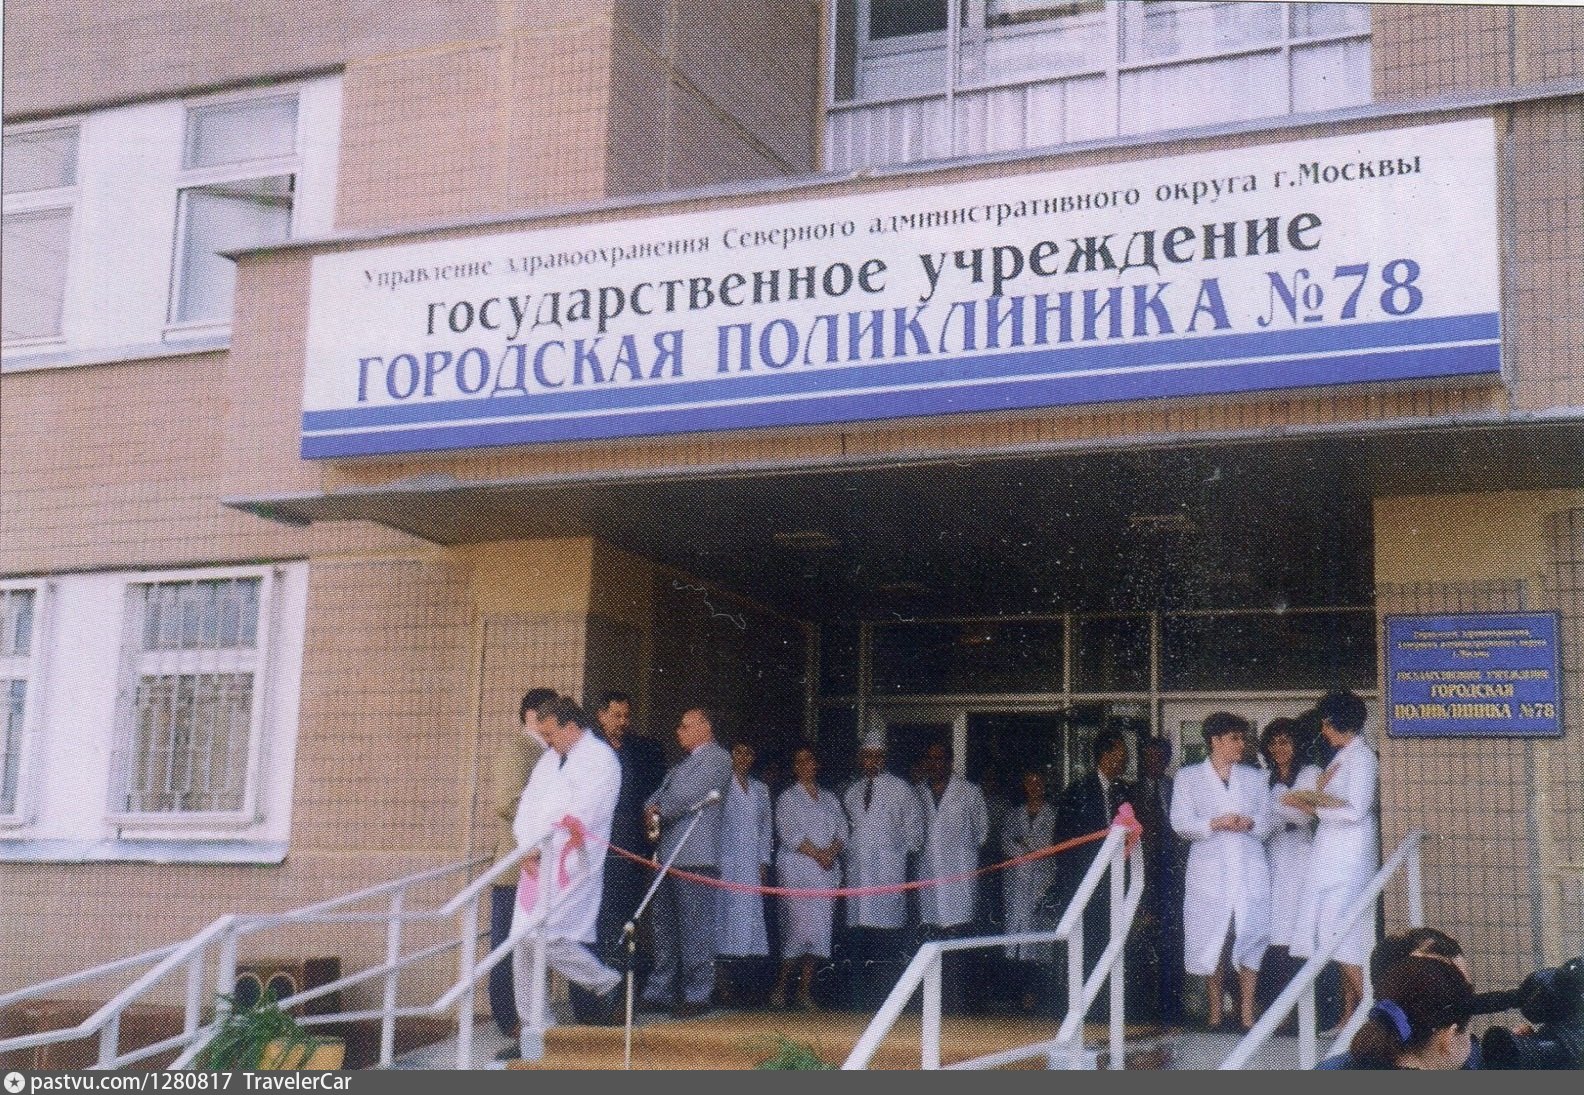 Поликлиники № 86 Дегунинская. Кдц 6 155